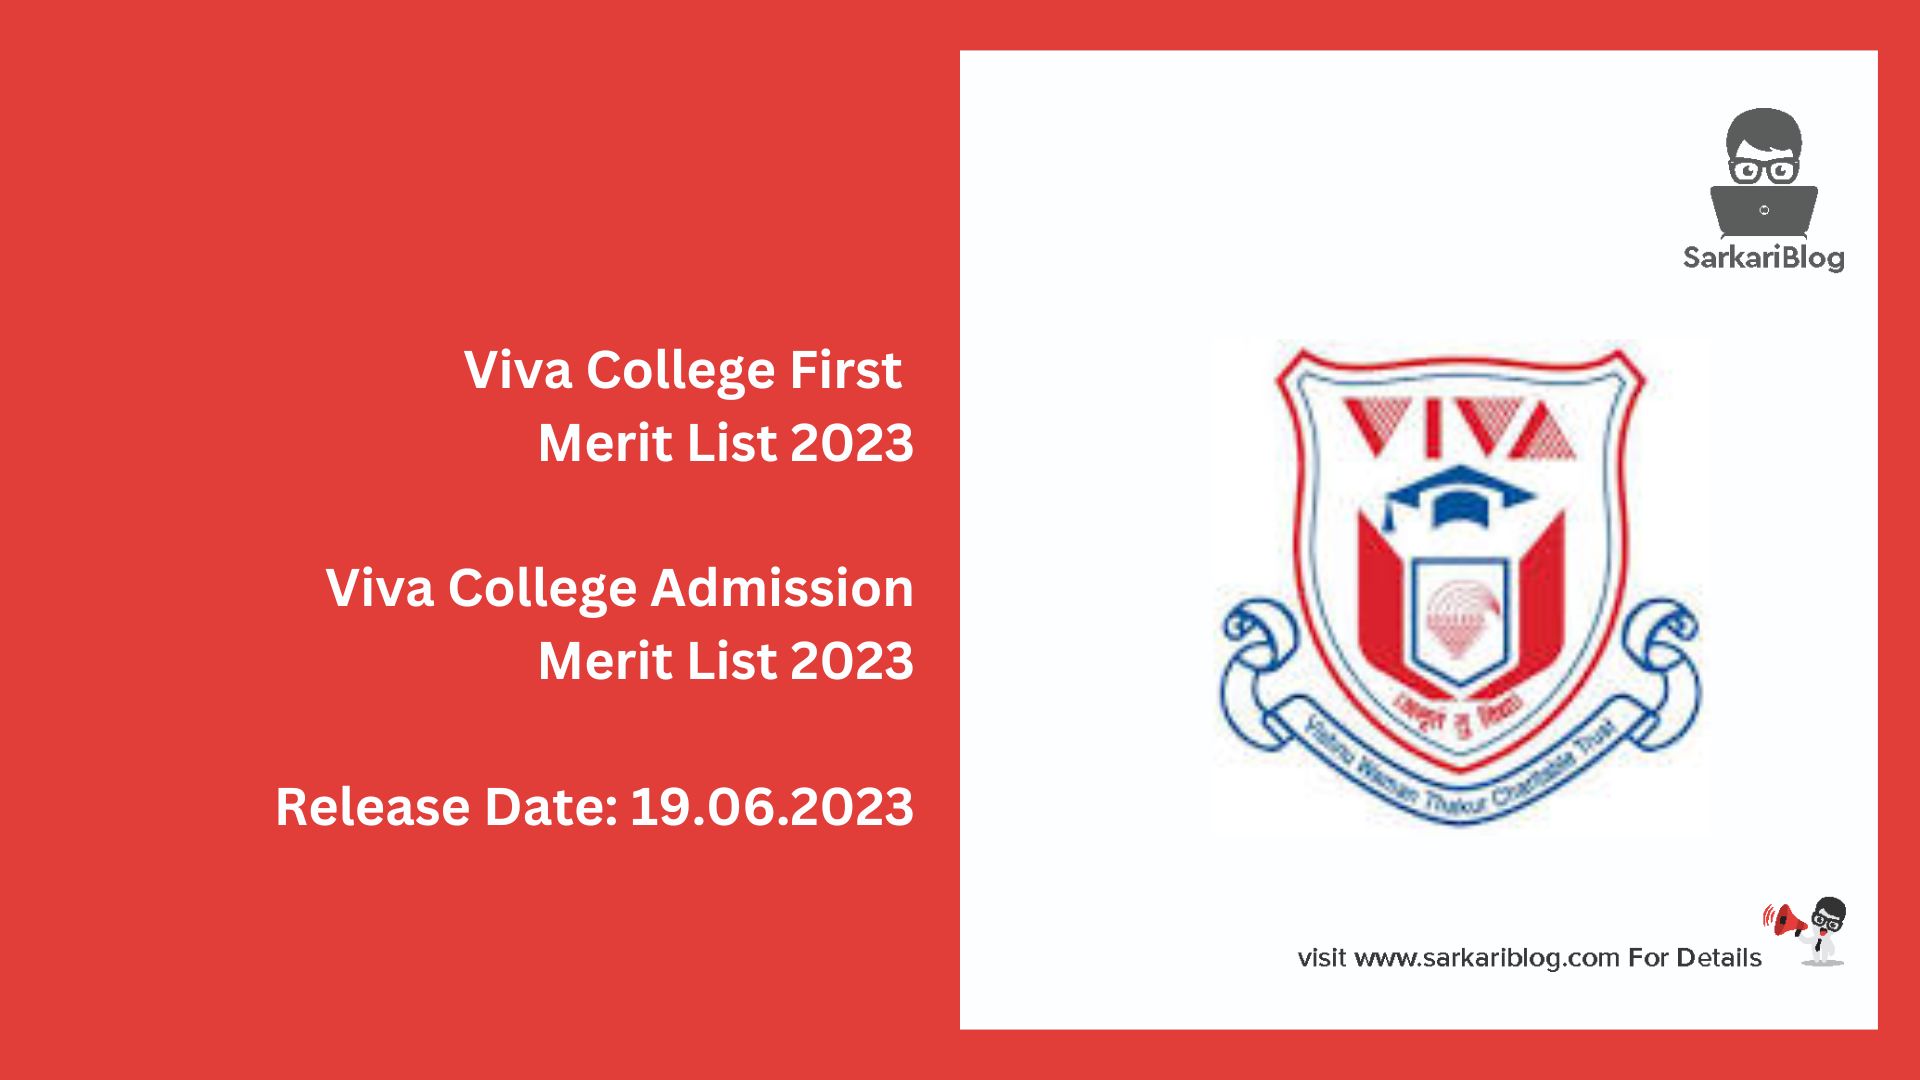 Viva College First Merit List 2023